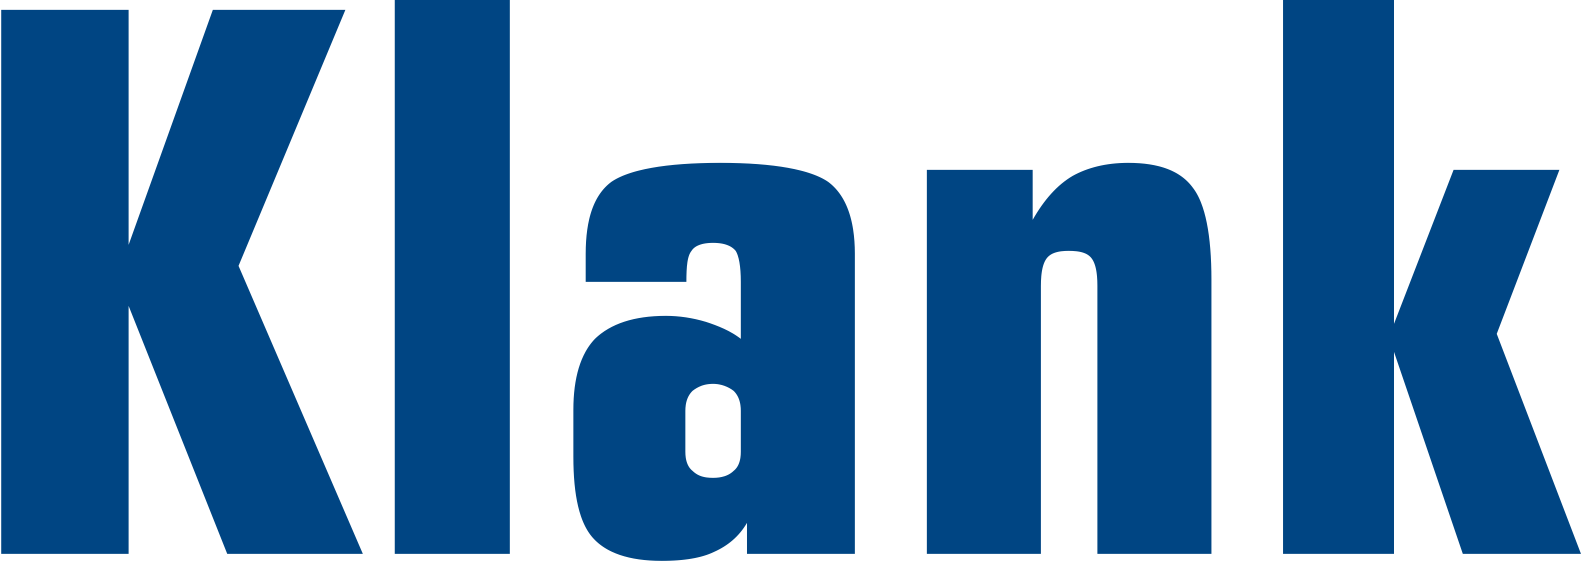 Klank - Stahlbau - Logo in klein - ohne Schriftzug